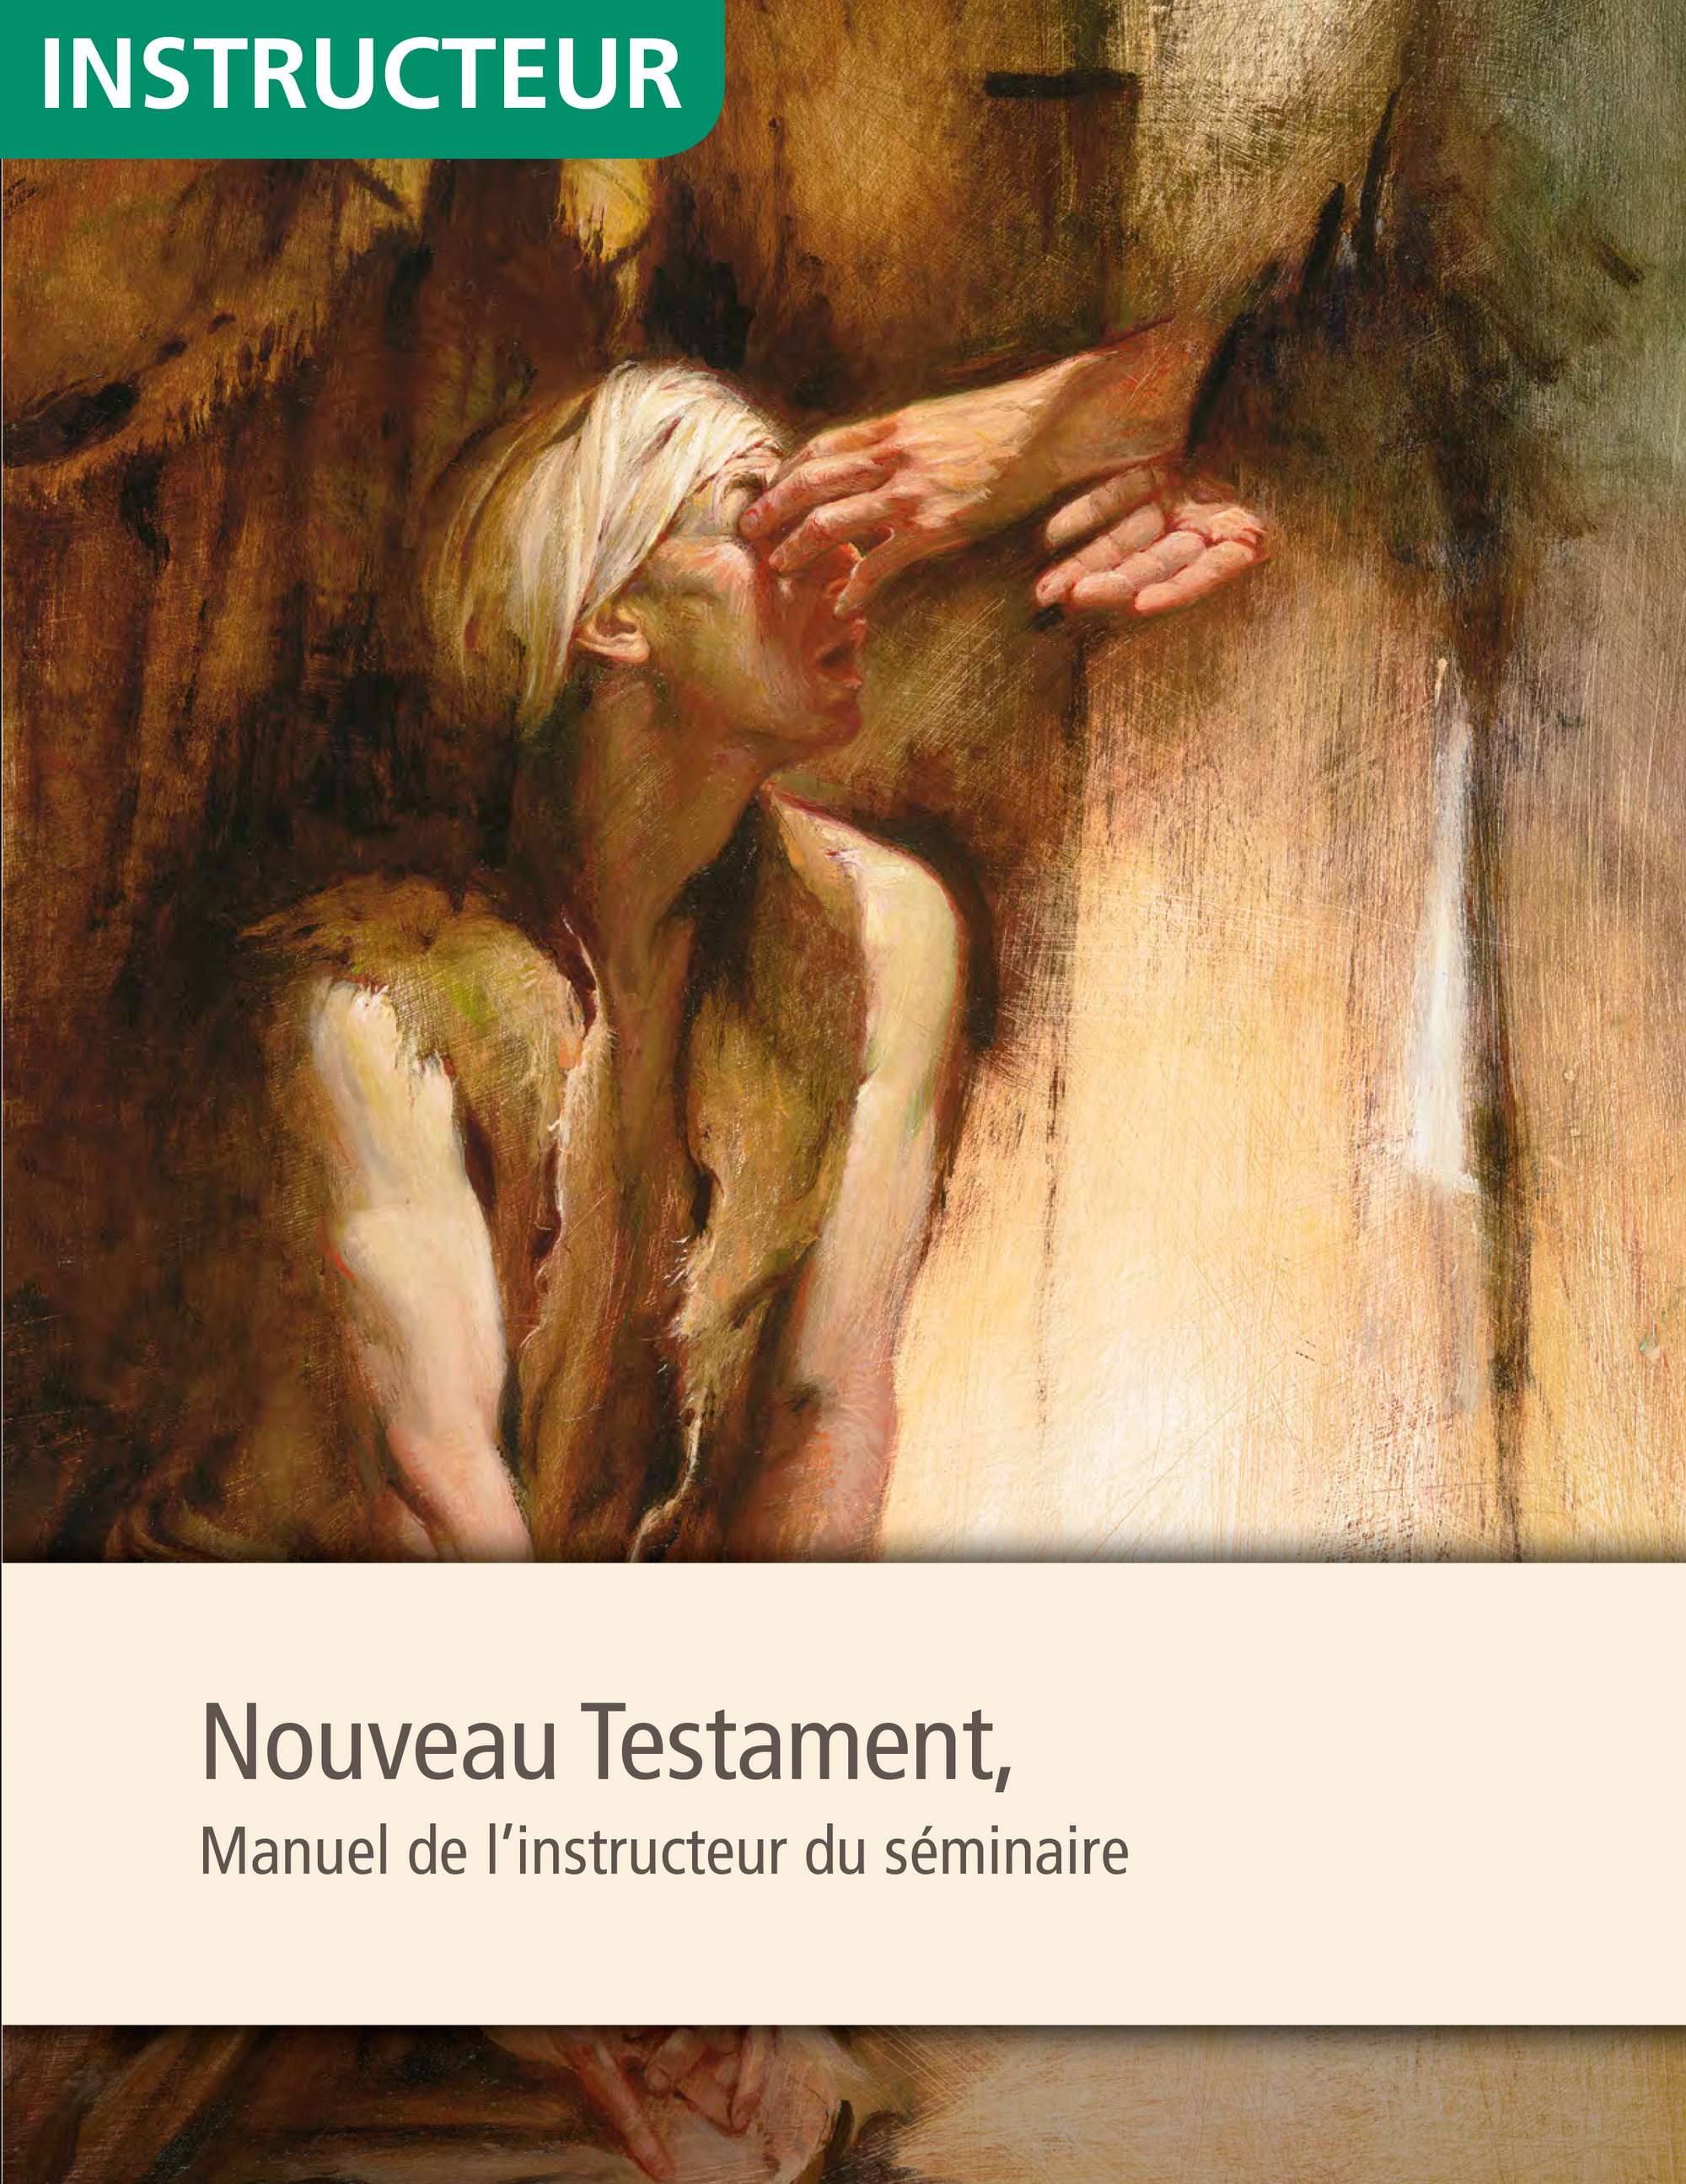 Nouveau Testament, manuel de l’instructeur de séminaire